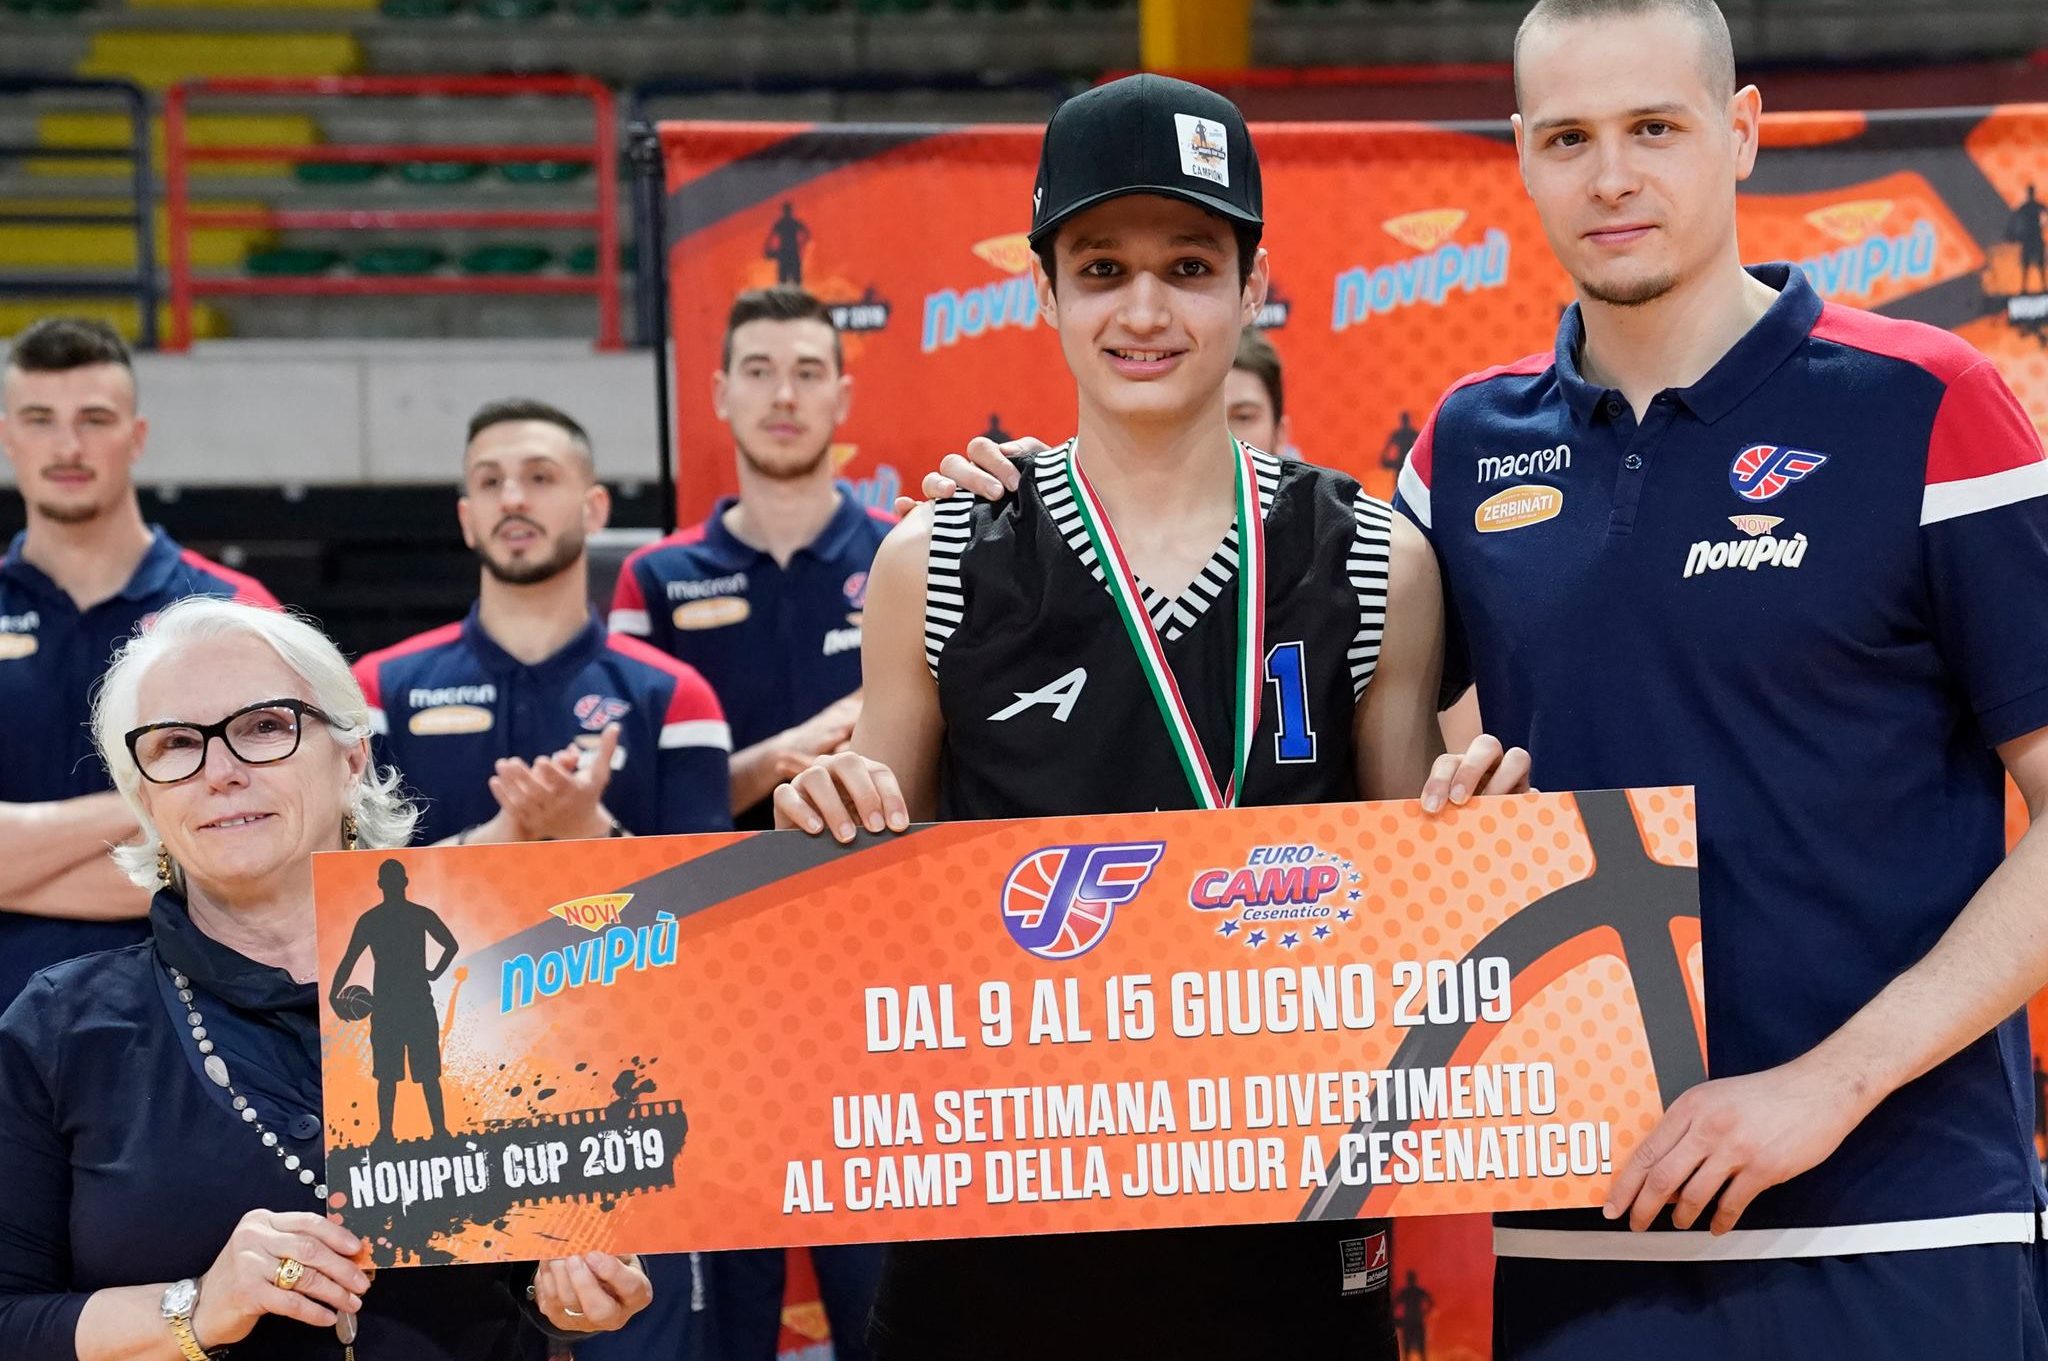 Novipiù Cup 2019 Pugliatti